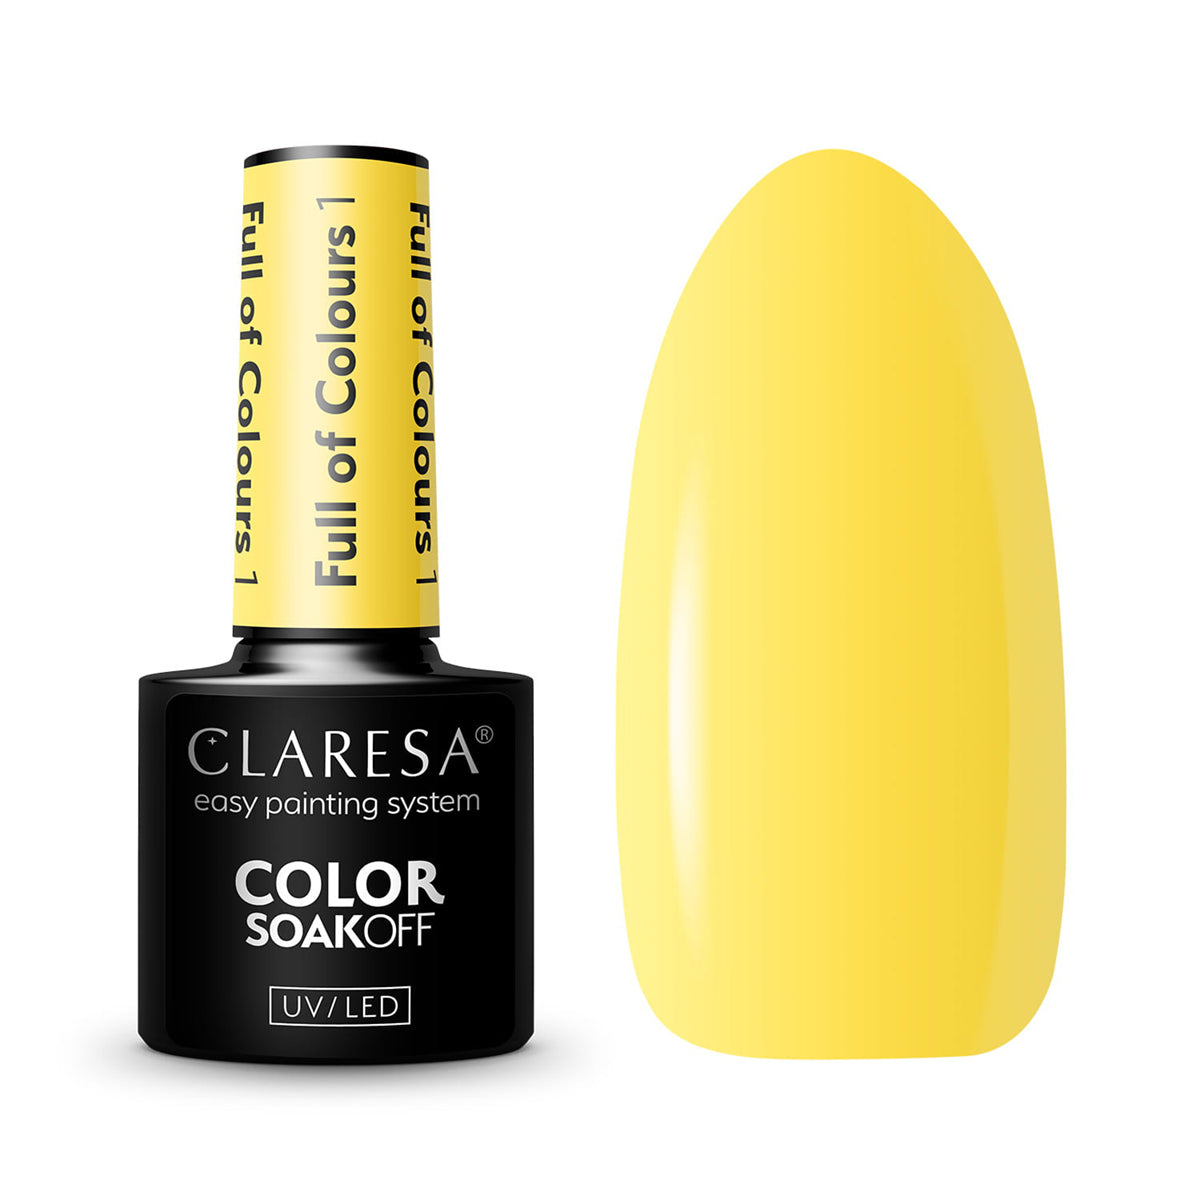 CLARESA Full of colours Hybride nagellak 1 -5g